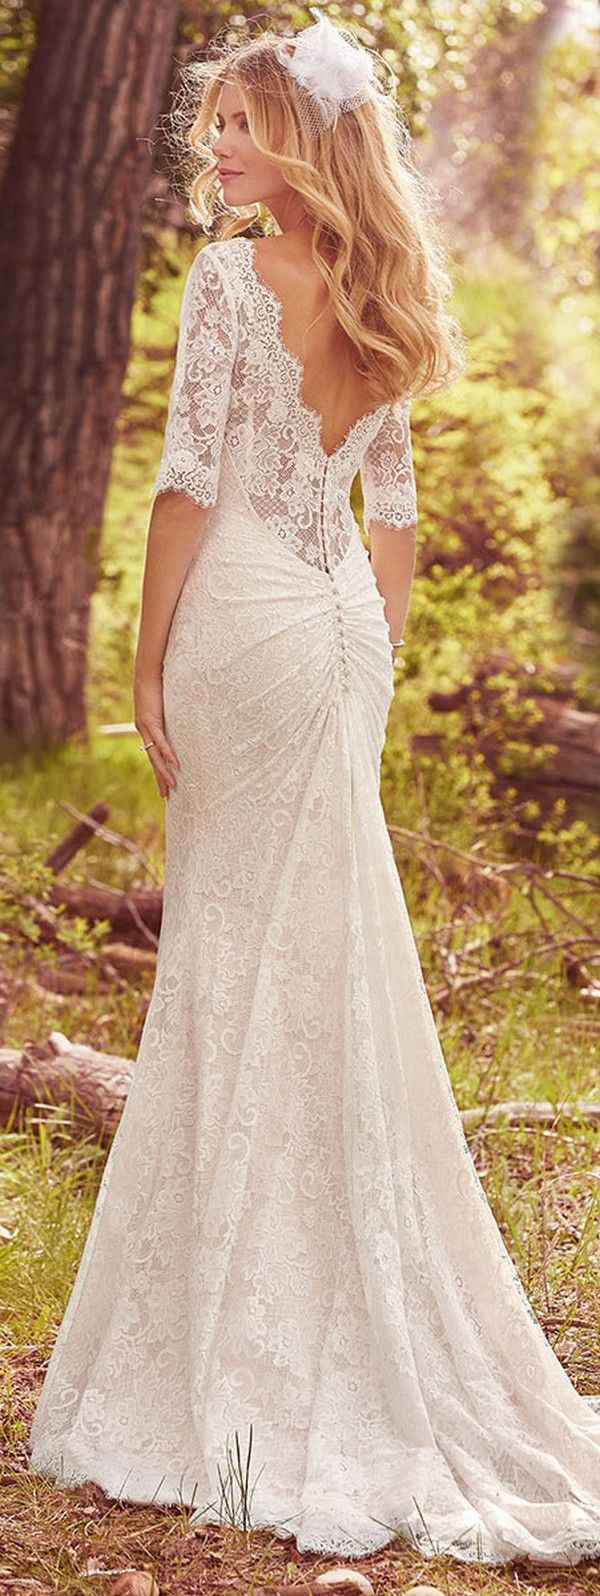 Lace Vintage Wedding Dress
 Top 20 Vintage Wedding Dresses for 2019 Trends